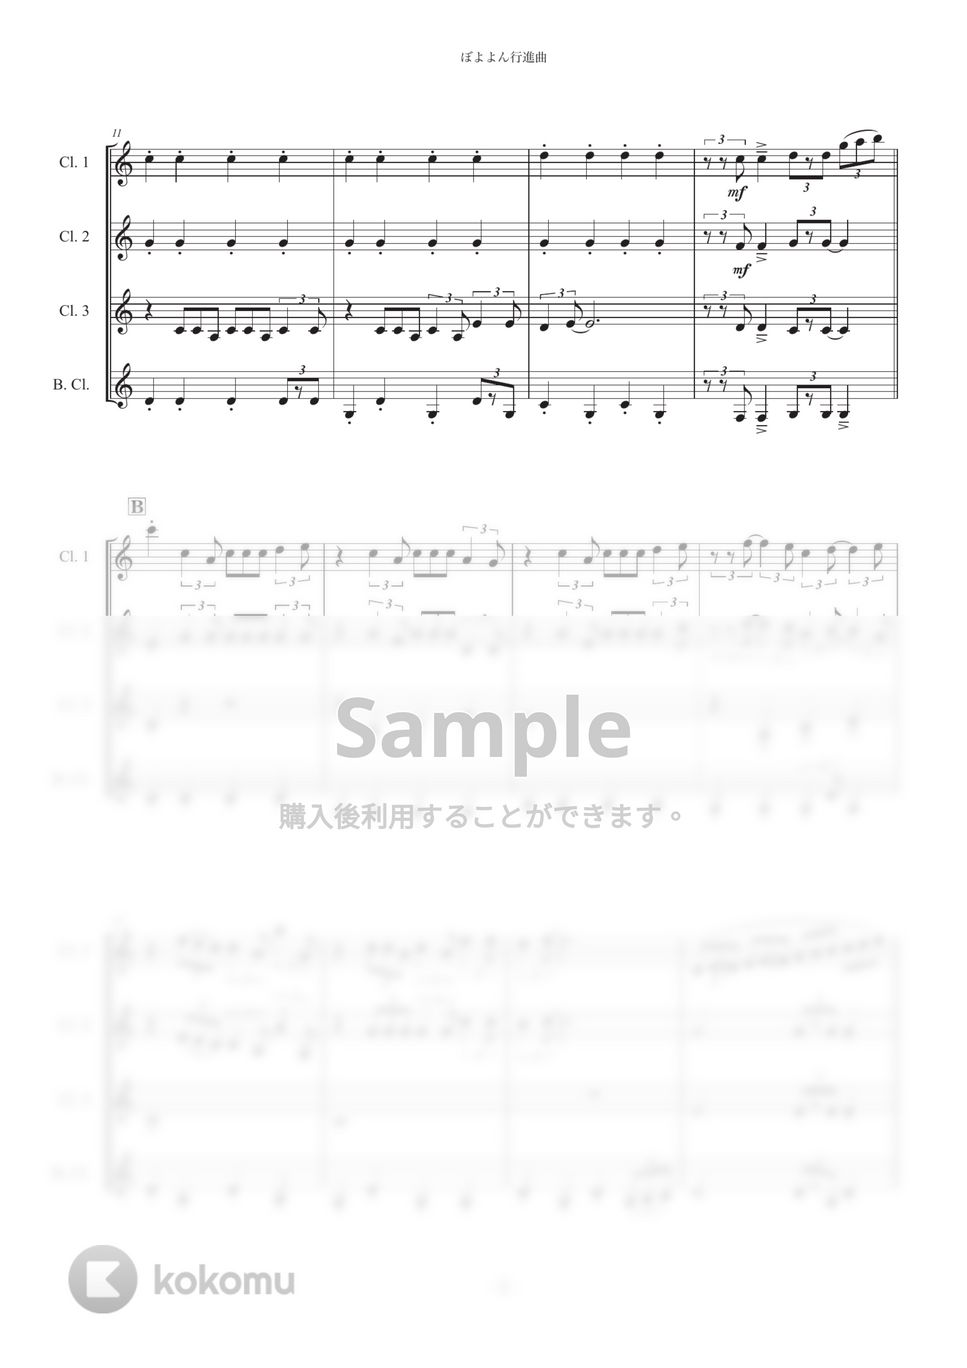 ぼよよん行進曲【クラリネット四重奏】 by Musik Kanal